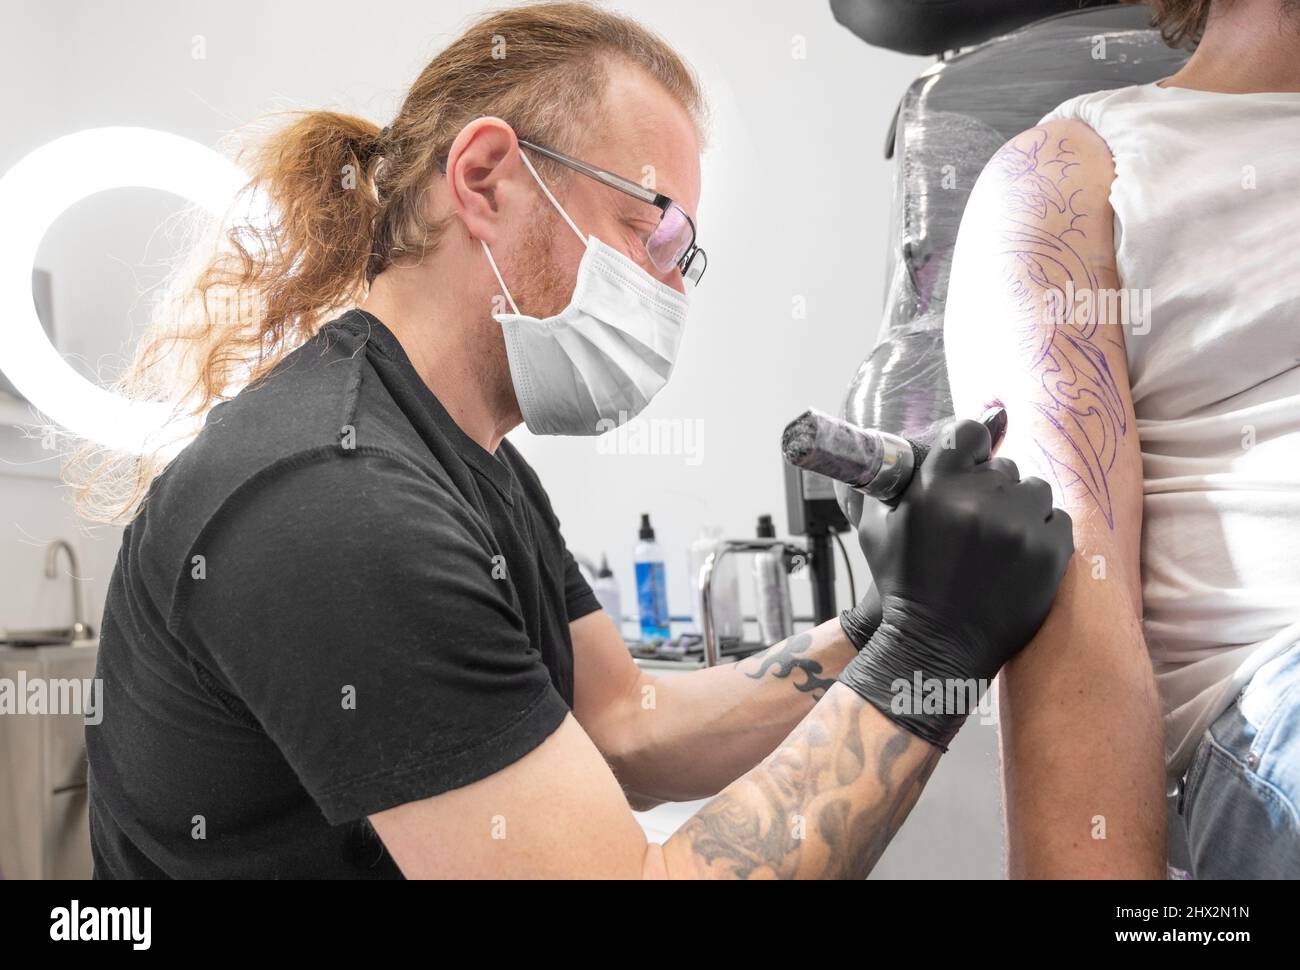 Mask tattoo immagini e fotografie stock ad alta risoluzione - Alamy